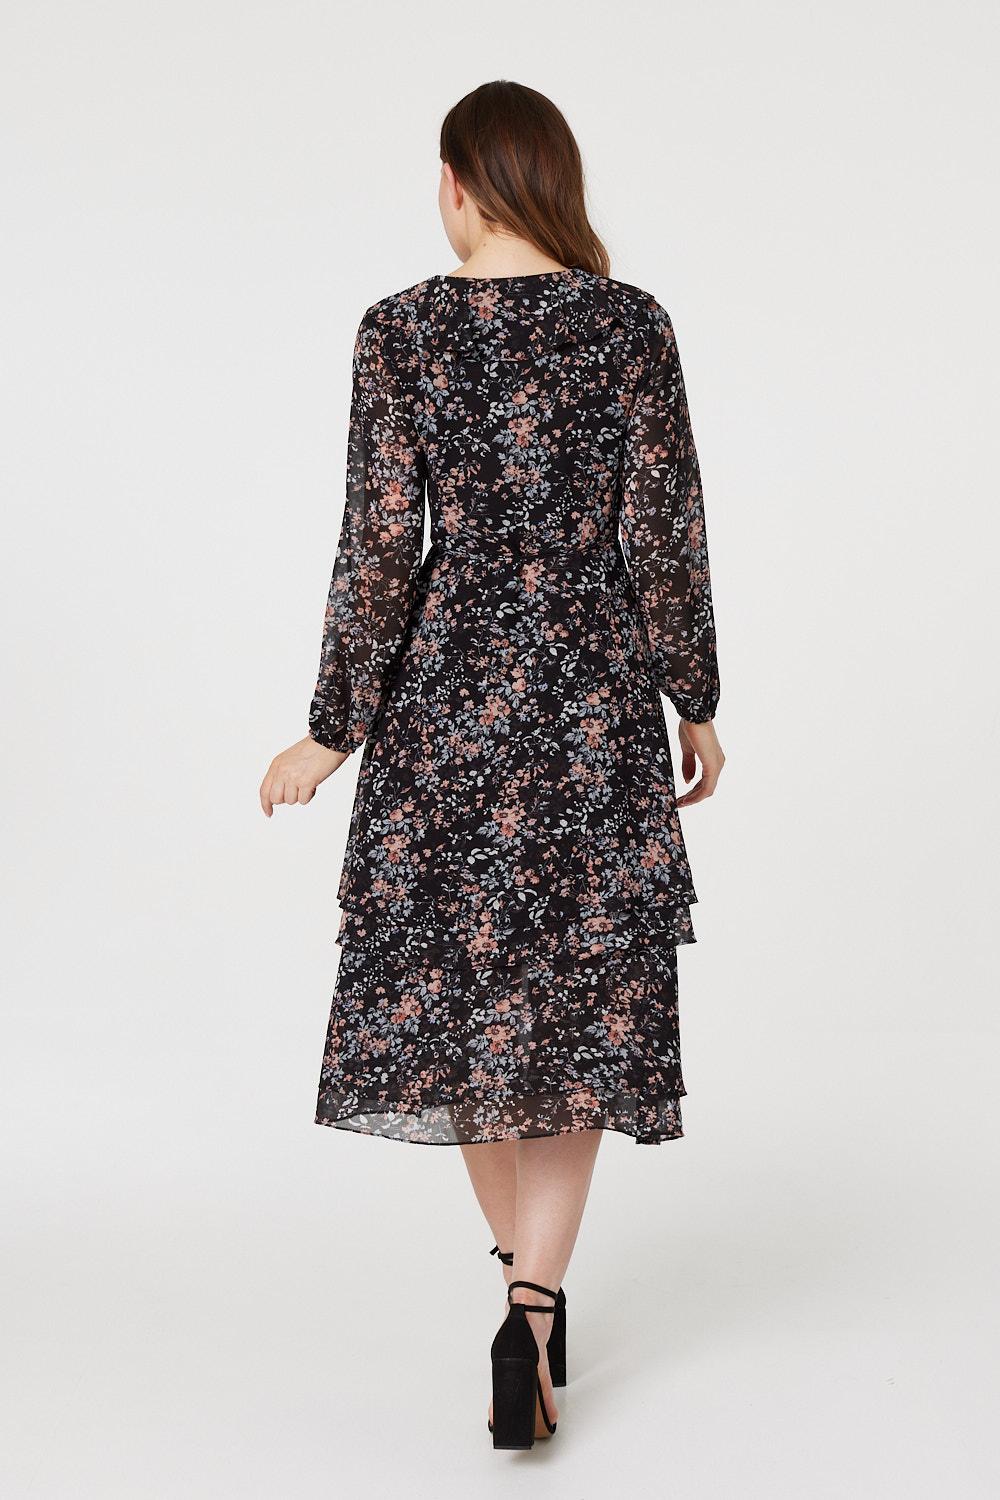 Black | Floral High Low Wrap Midi Dress